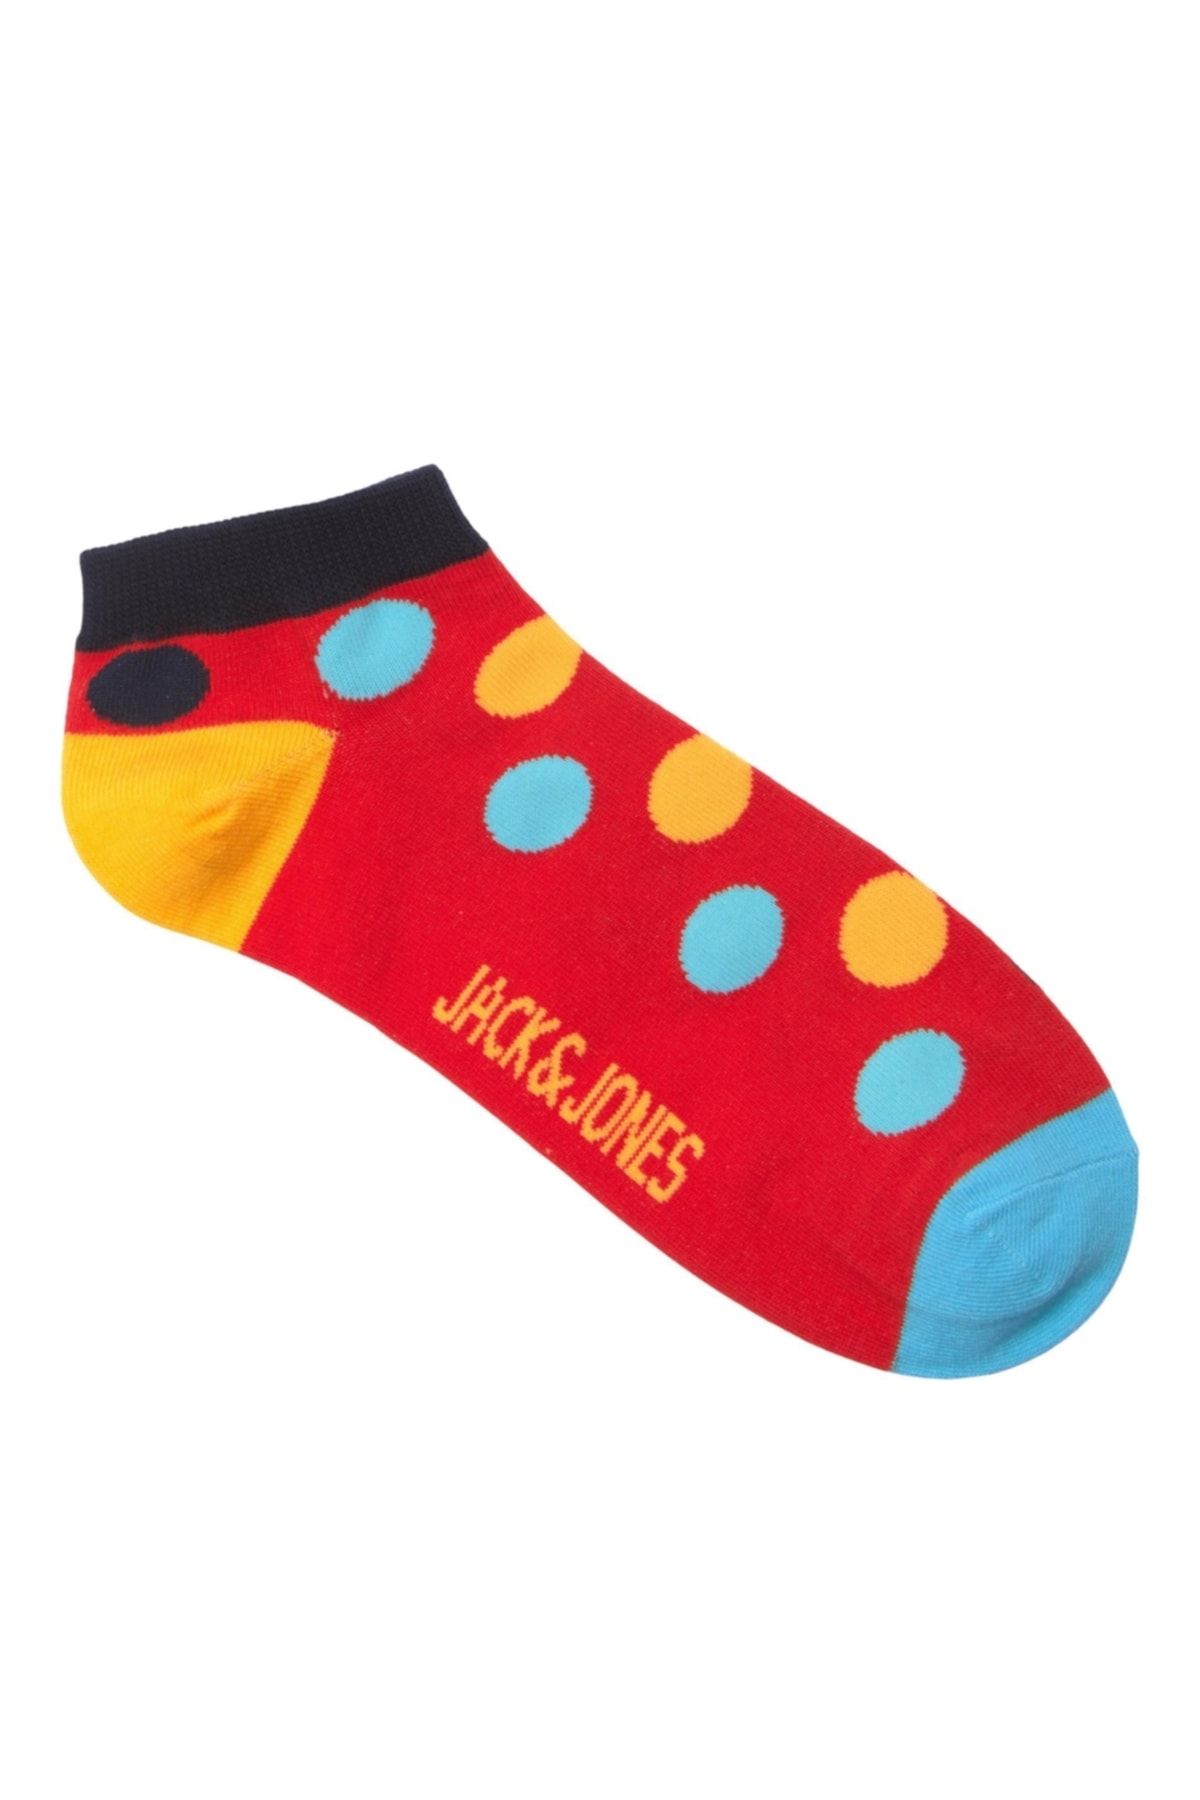 Jack & Jones Jack Jones Cheer Dot Short Sock Erkek Kırmızı Çorap 12209454-17